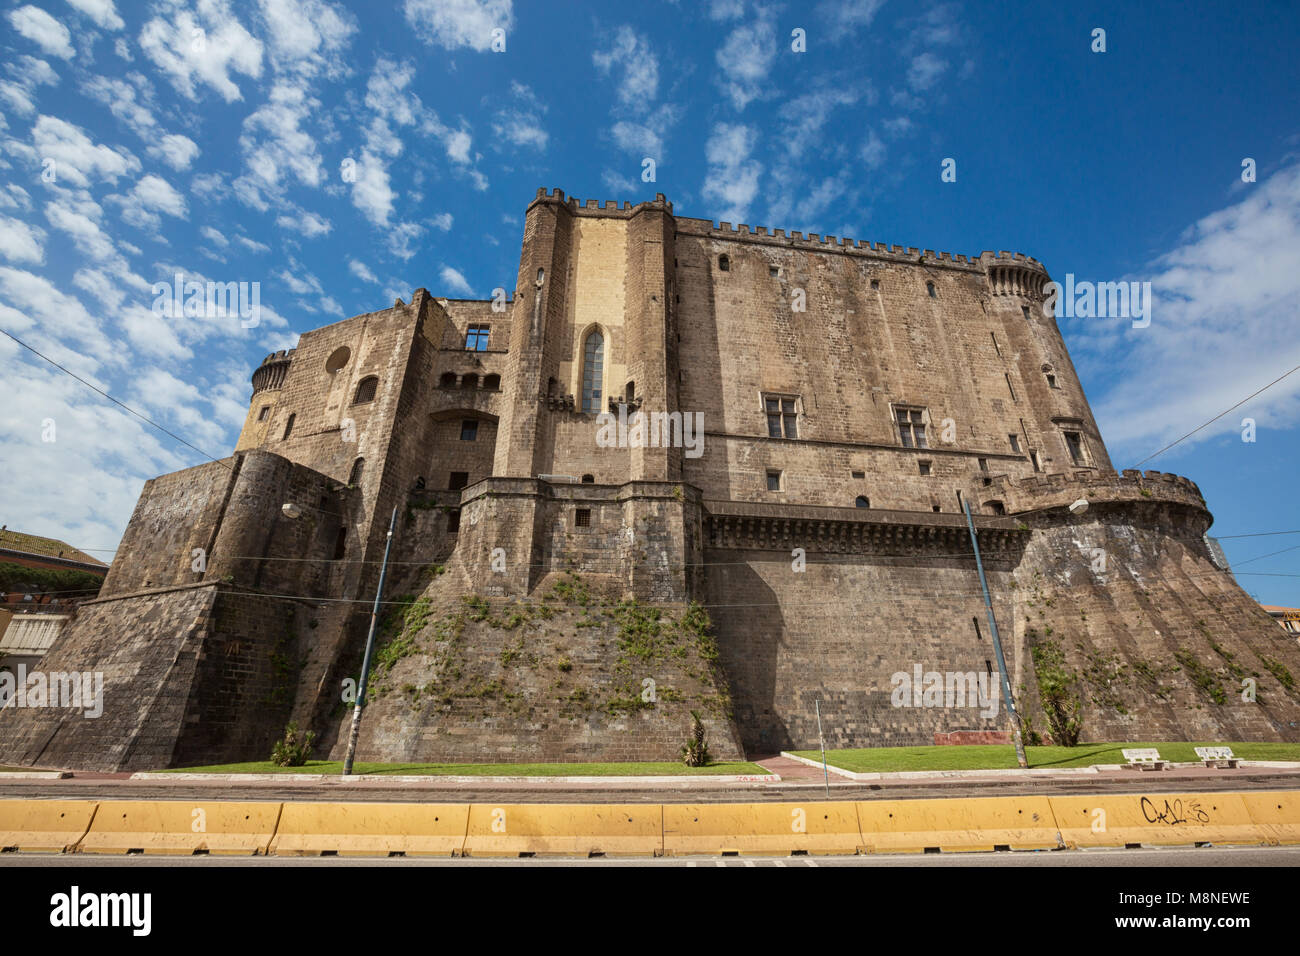 Napoli (Italia) - Castel Nuovo, New Castle, chiamato anche Maschio Angioino, è un castello medievale situato di fronte a Piazza Municipio e il municipio Foto Stock